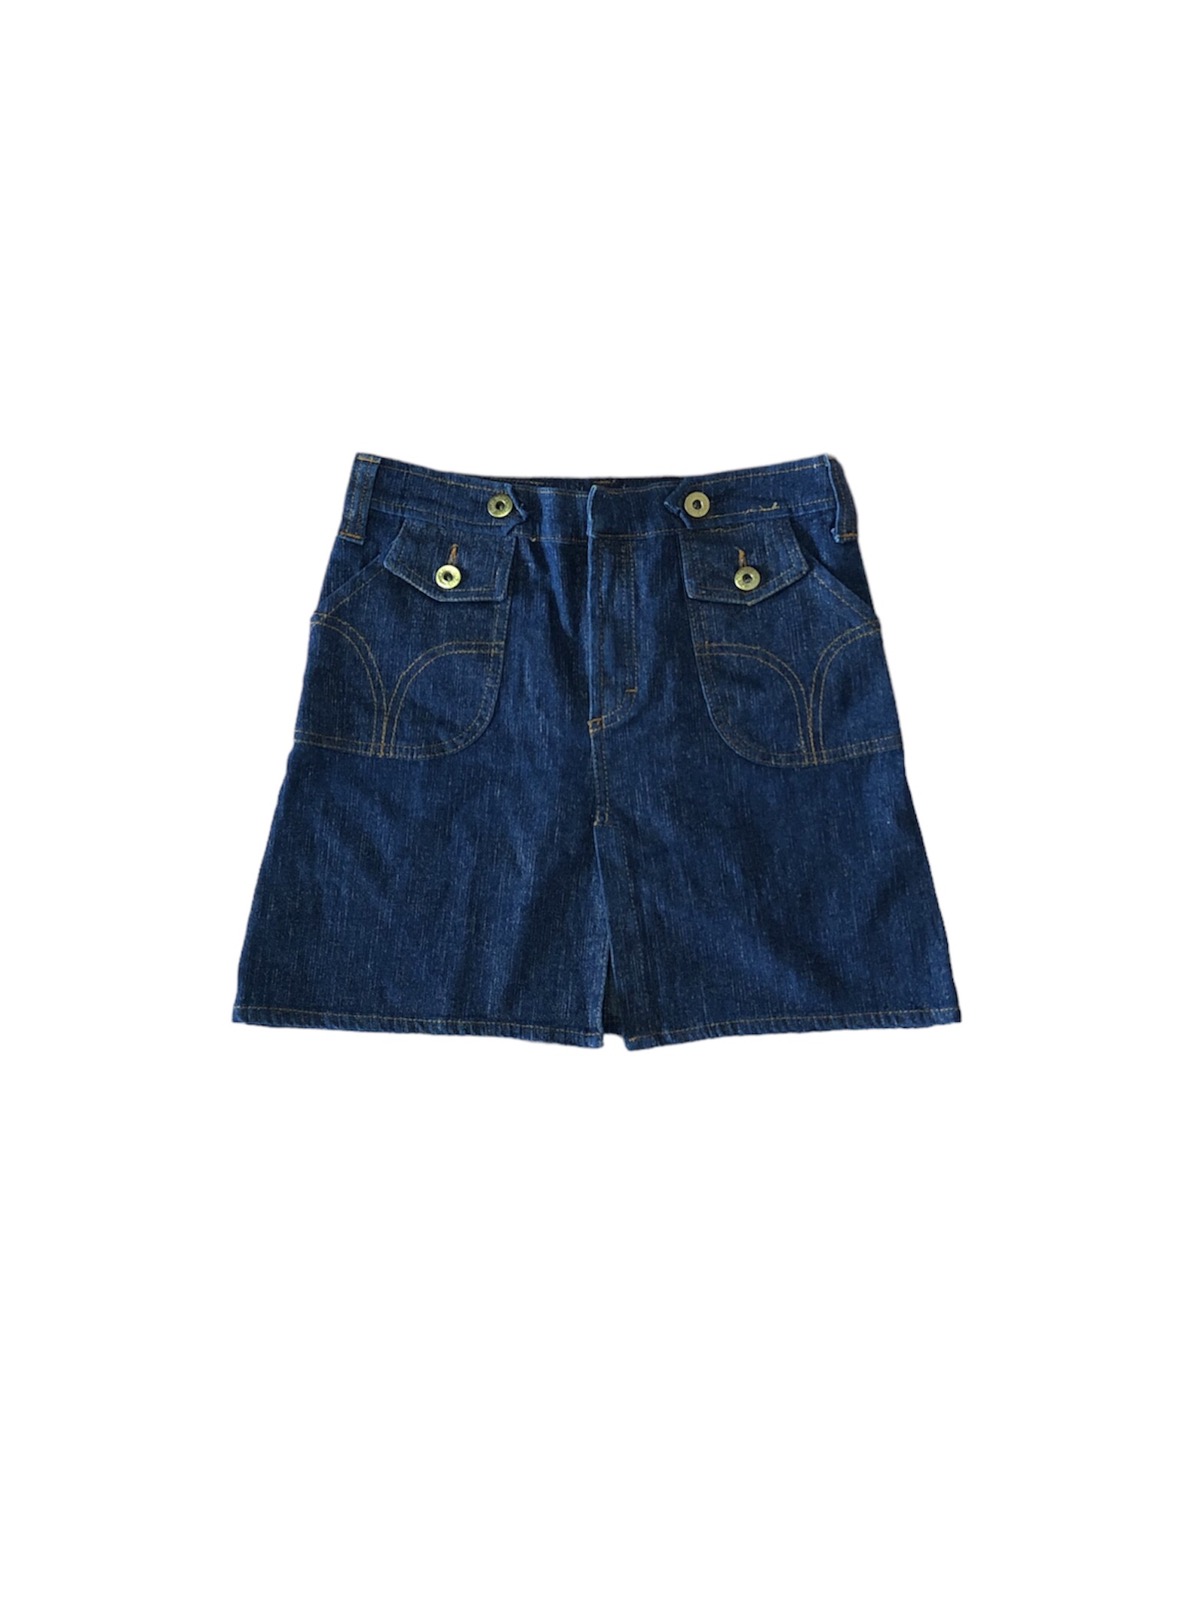 D&G mini skirts jeans - 1